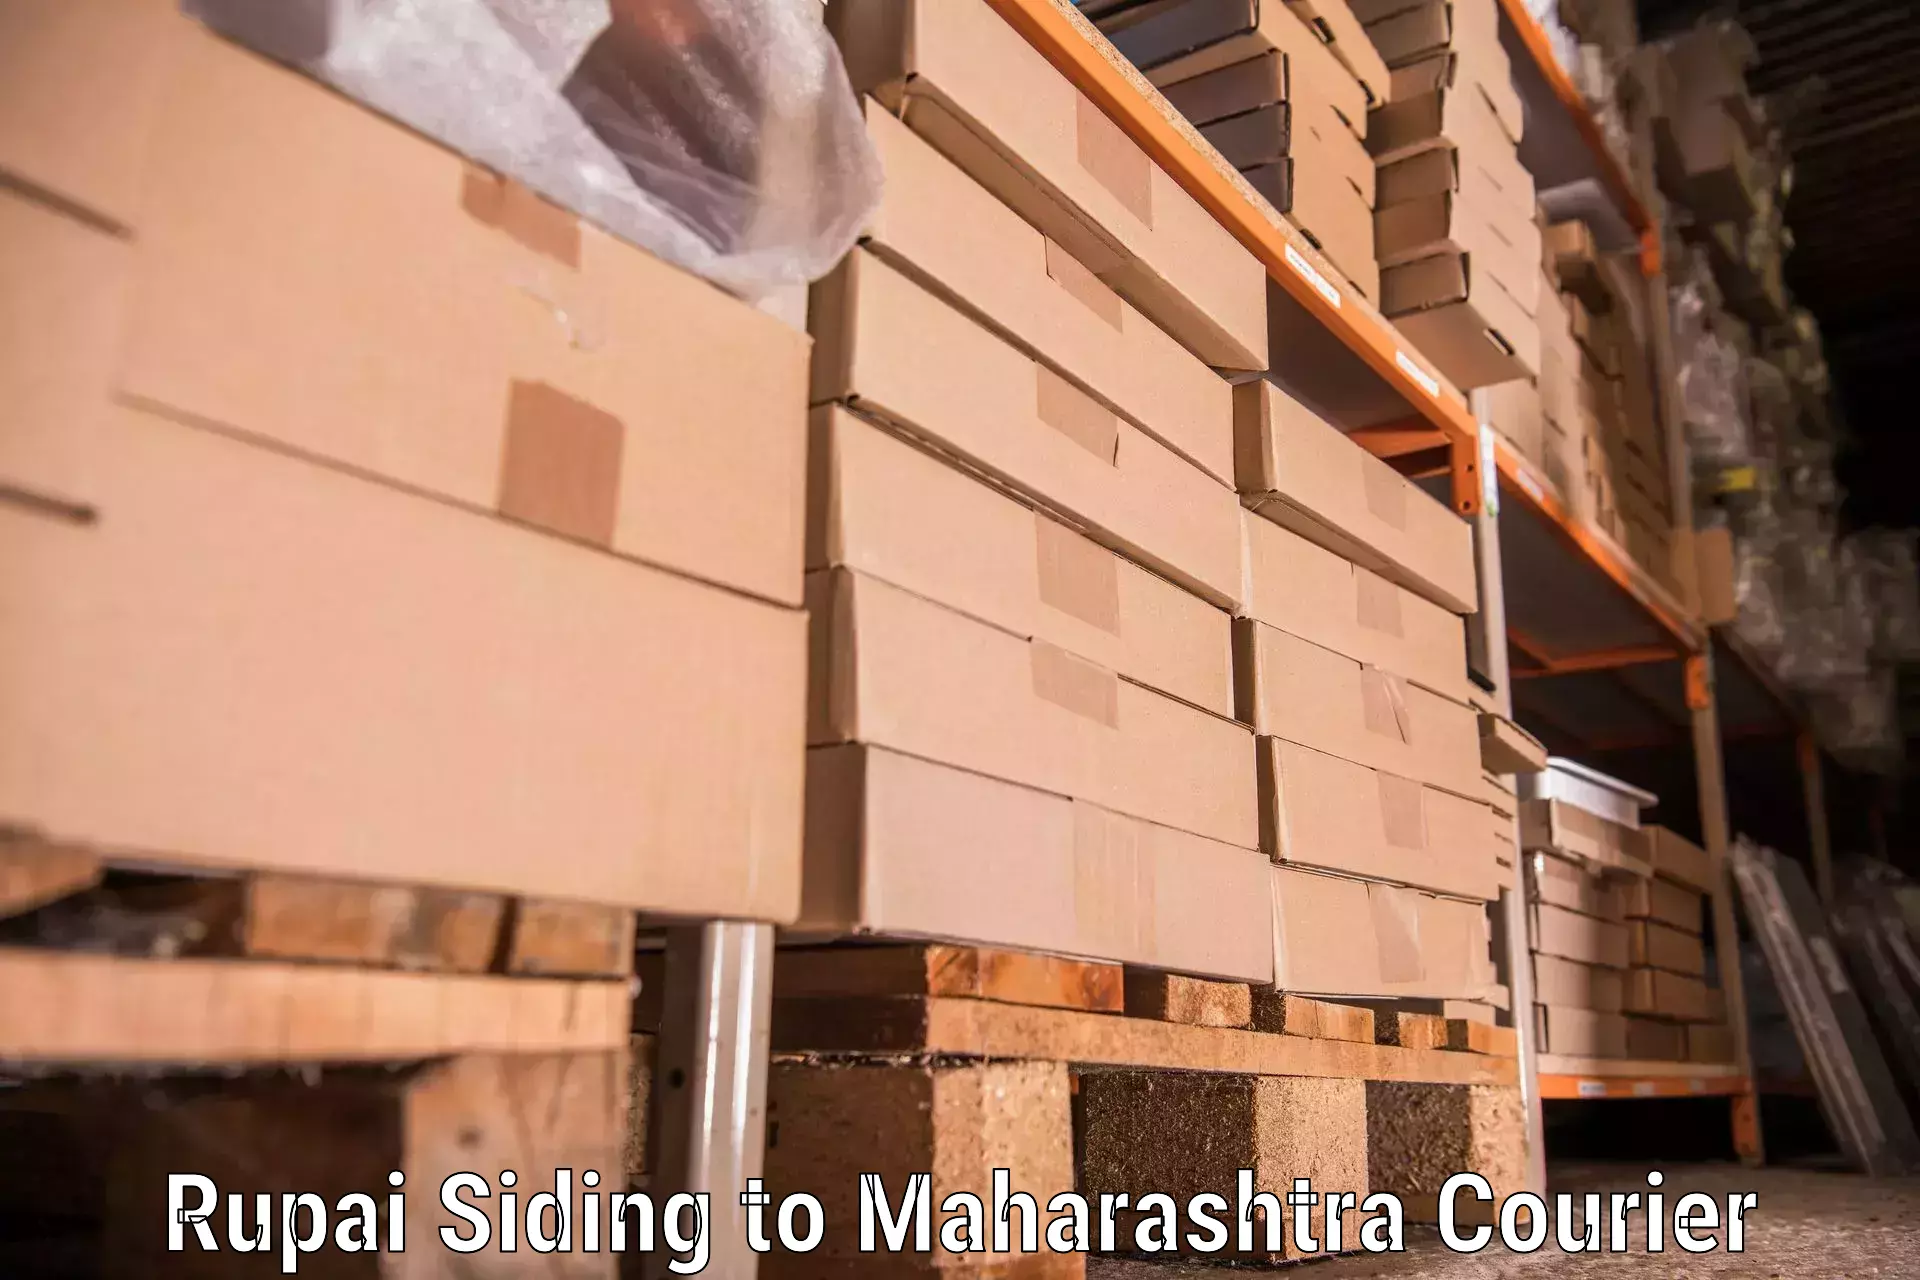 Moving and handling services Rupai Siding to Walchandnagar